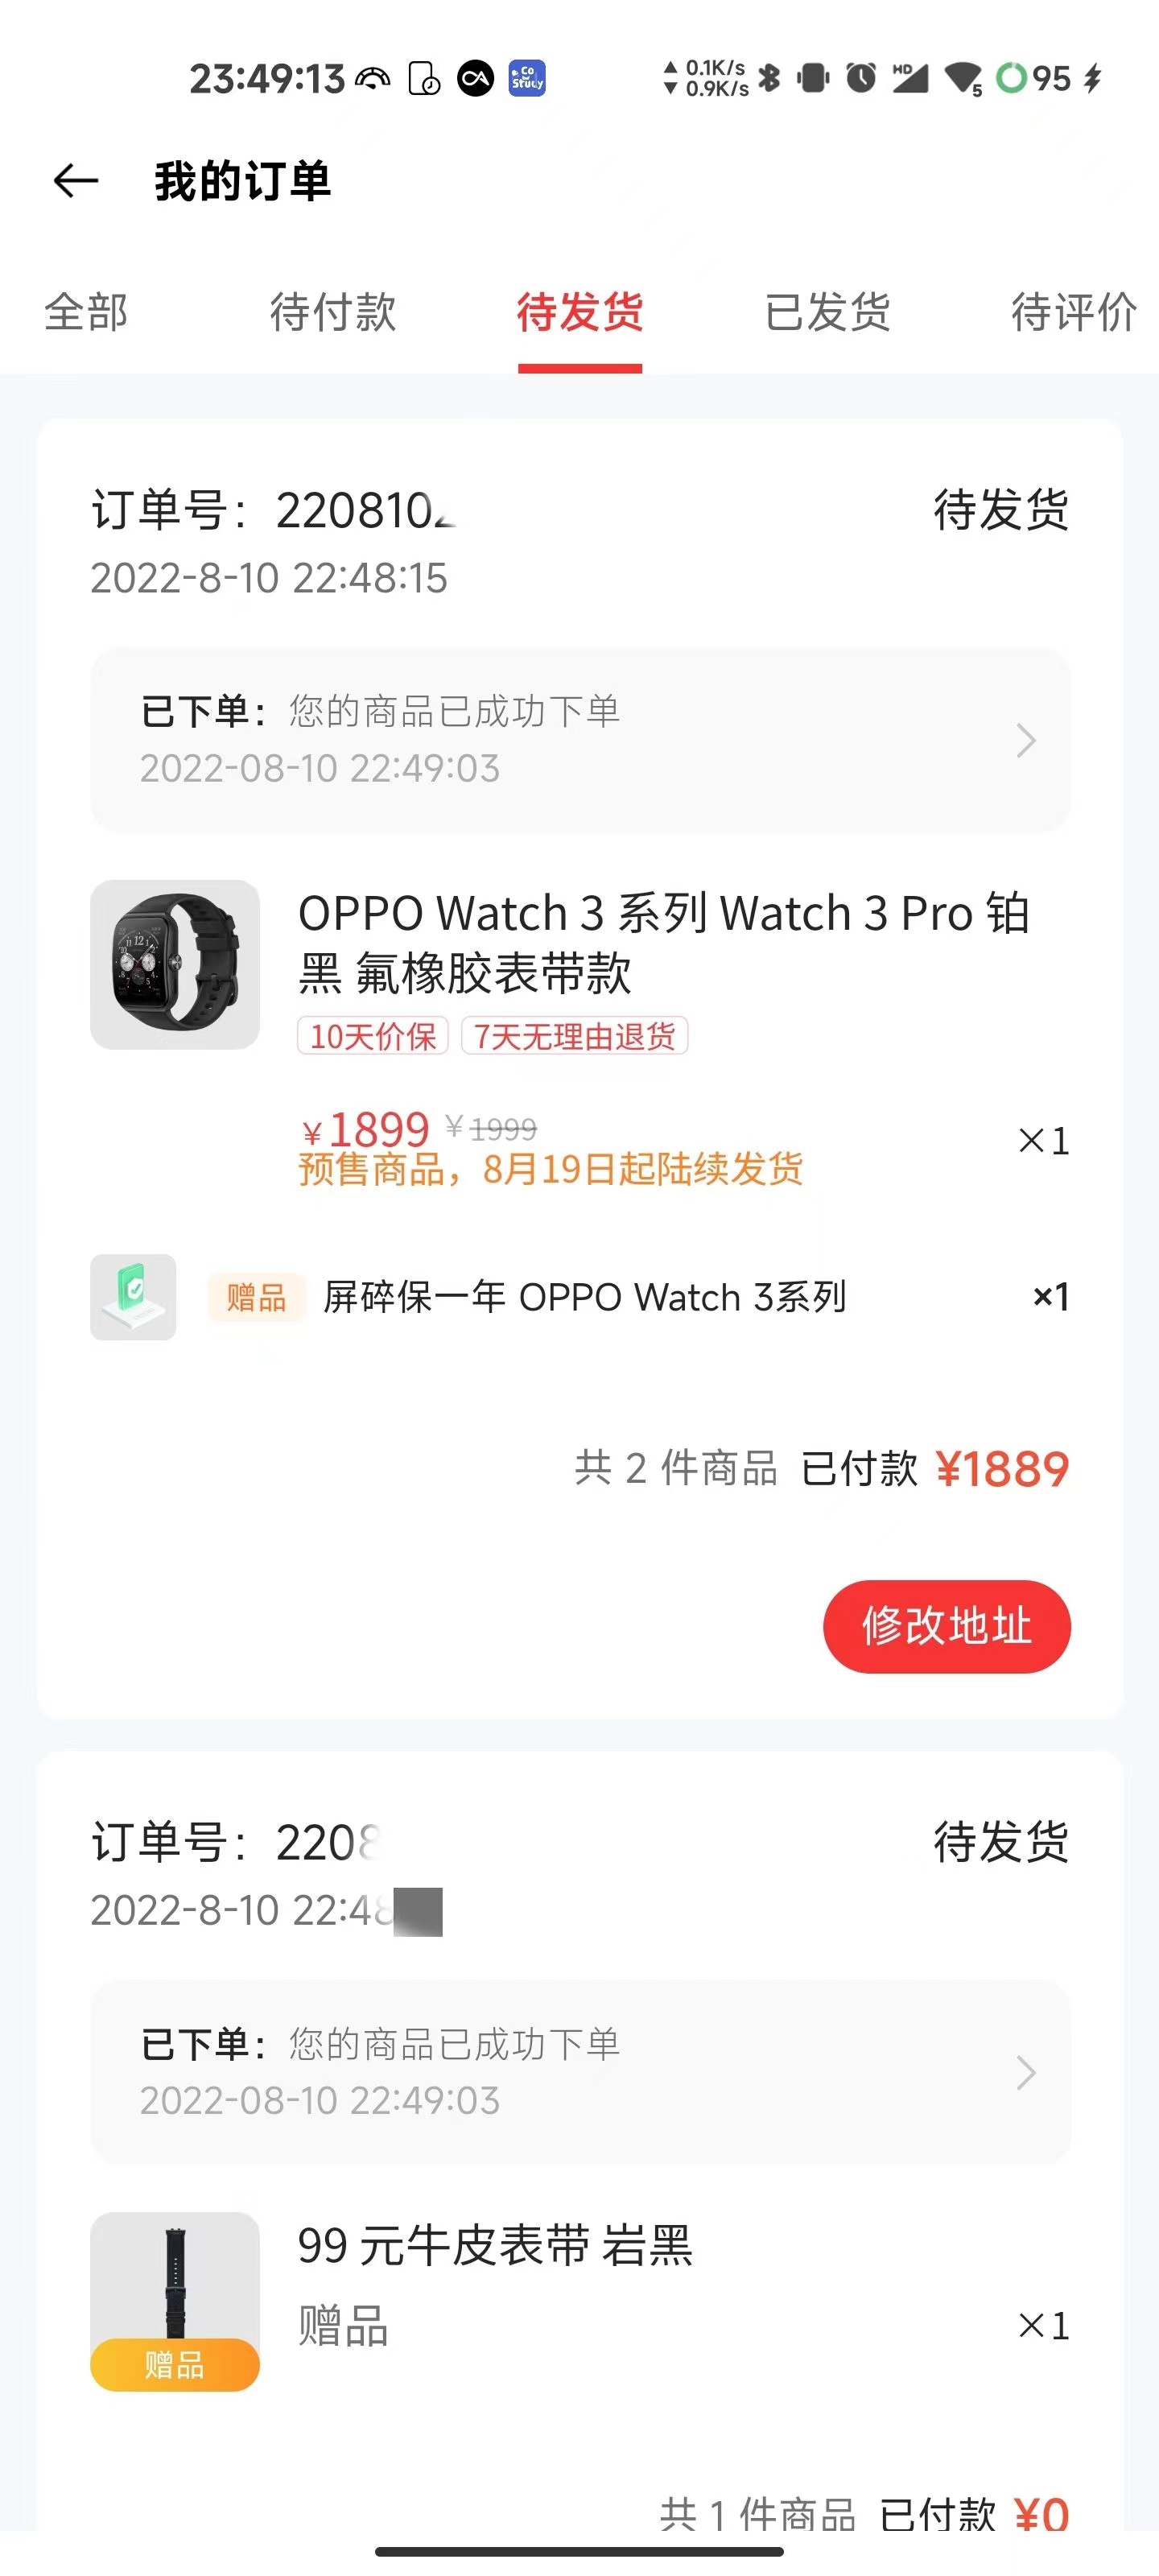 手机壳|OPPO Watch 3 Pro已入手等收货